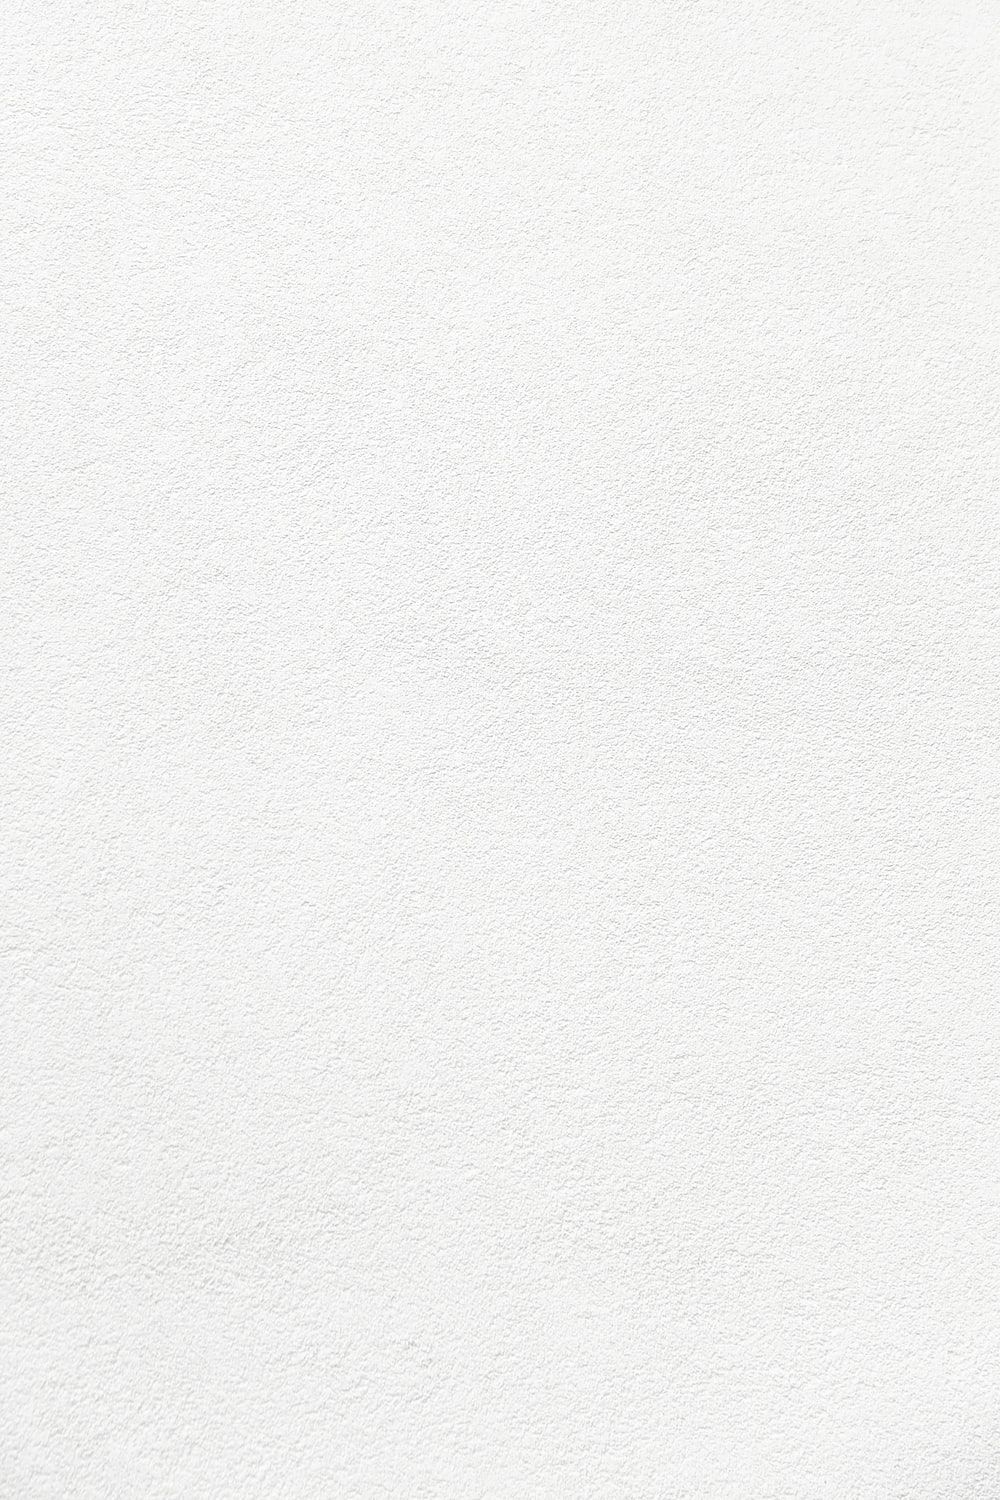 Plain White Wallpapers - 4k, HD Plain White Backgrounds on WallpaperBat